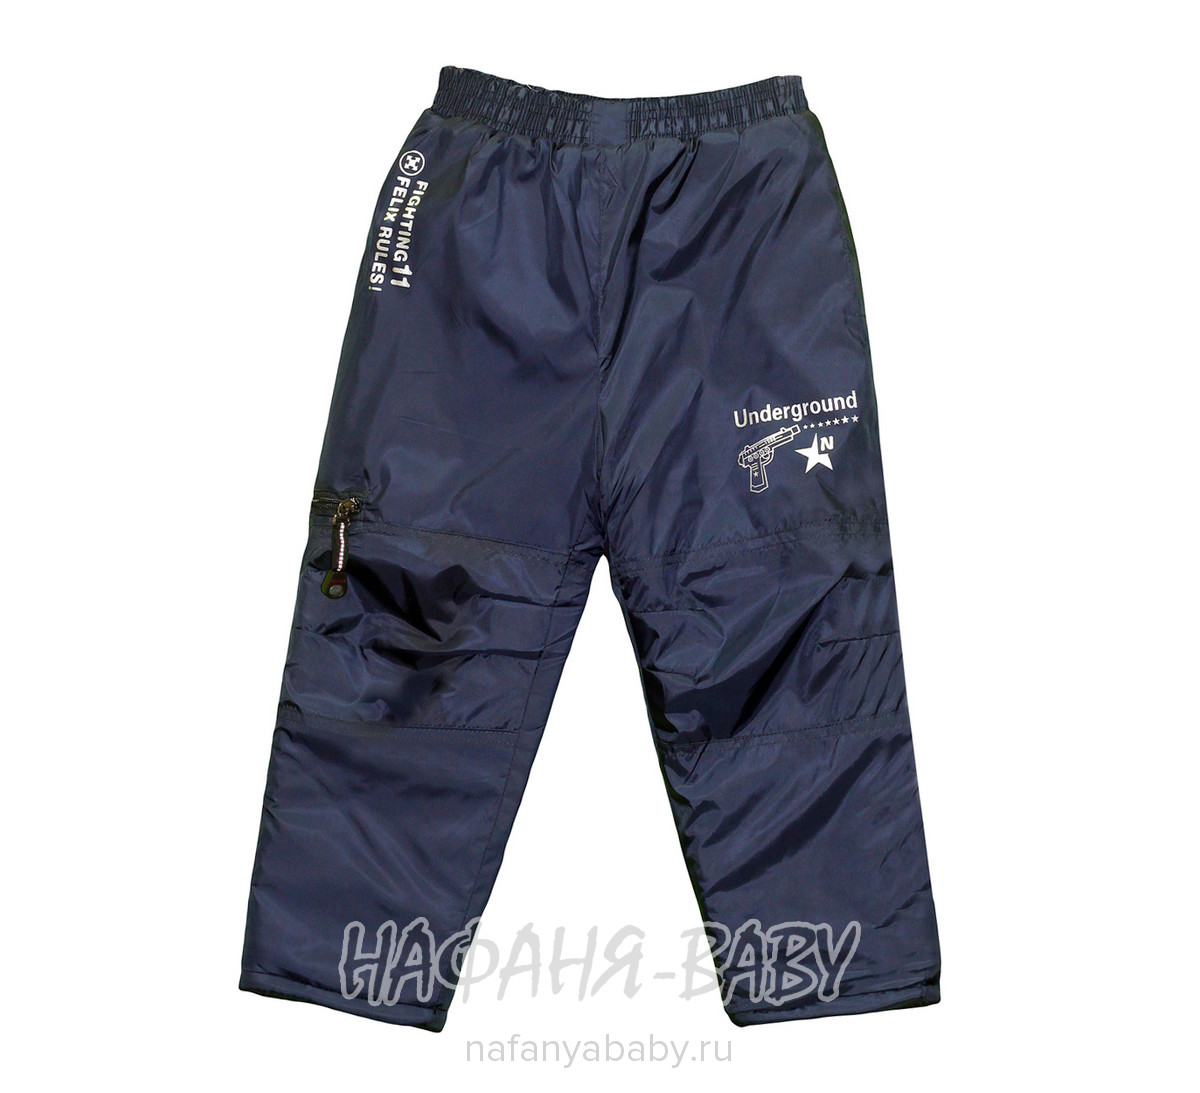 Детские зимние брюки ZHB арт: 986 20-23, 5-9 лет, оптом Китай (Пекин)